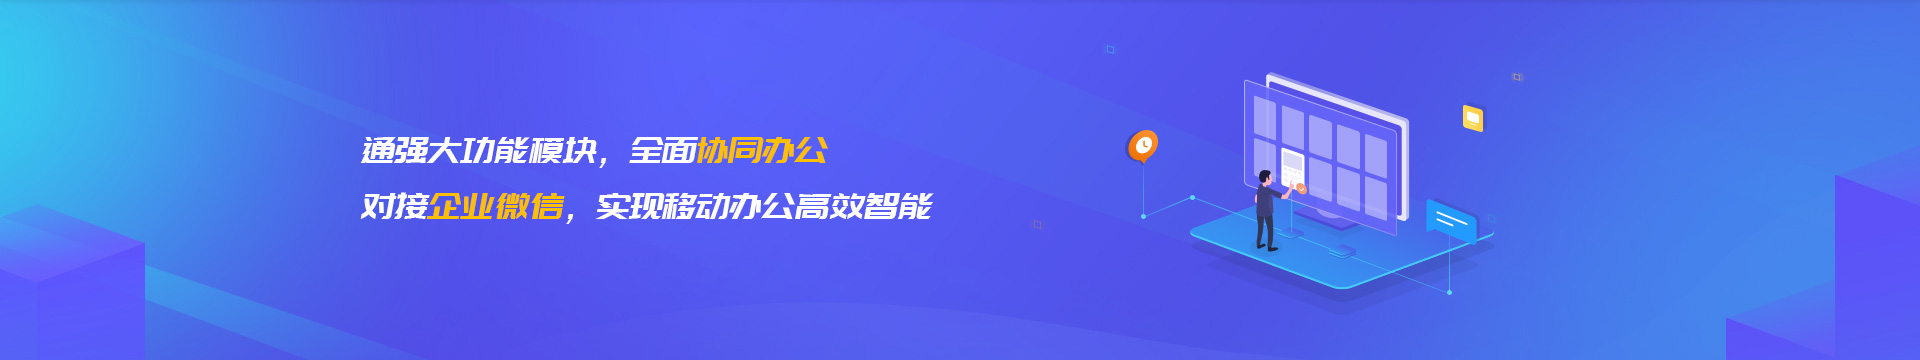 甘南藏族企业微信开发